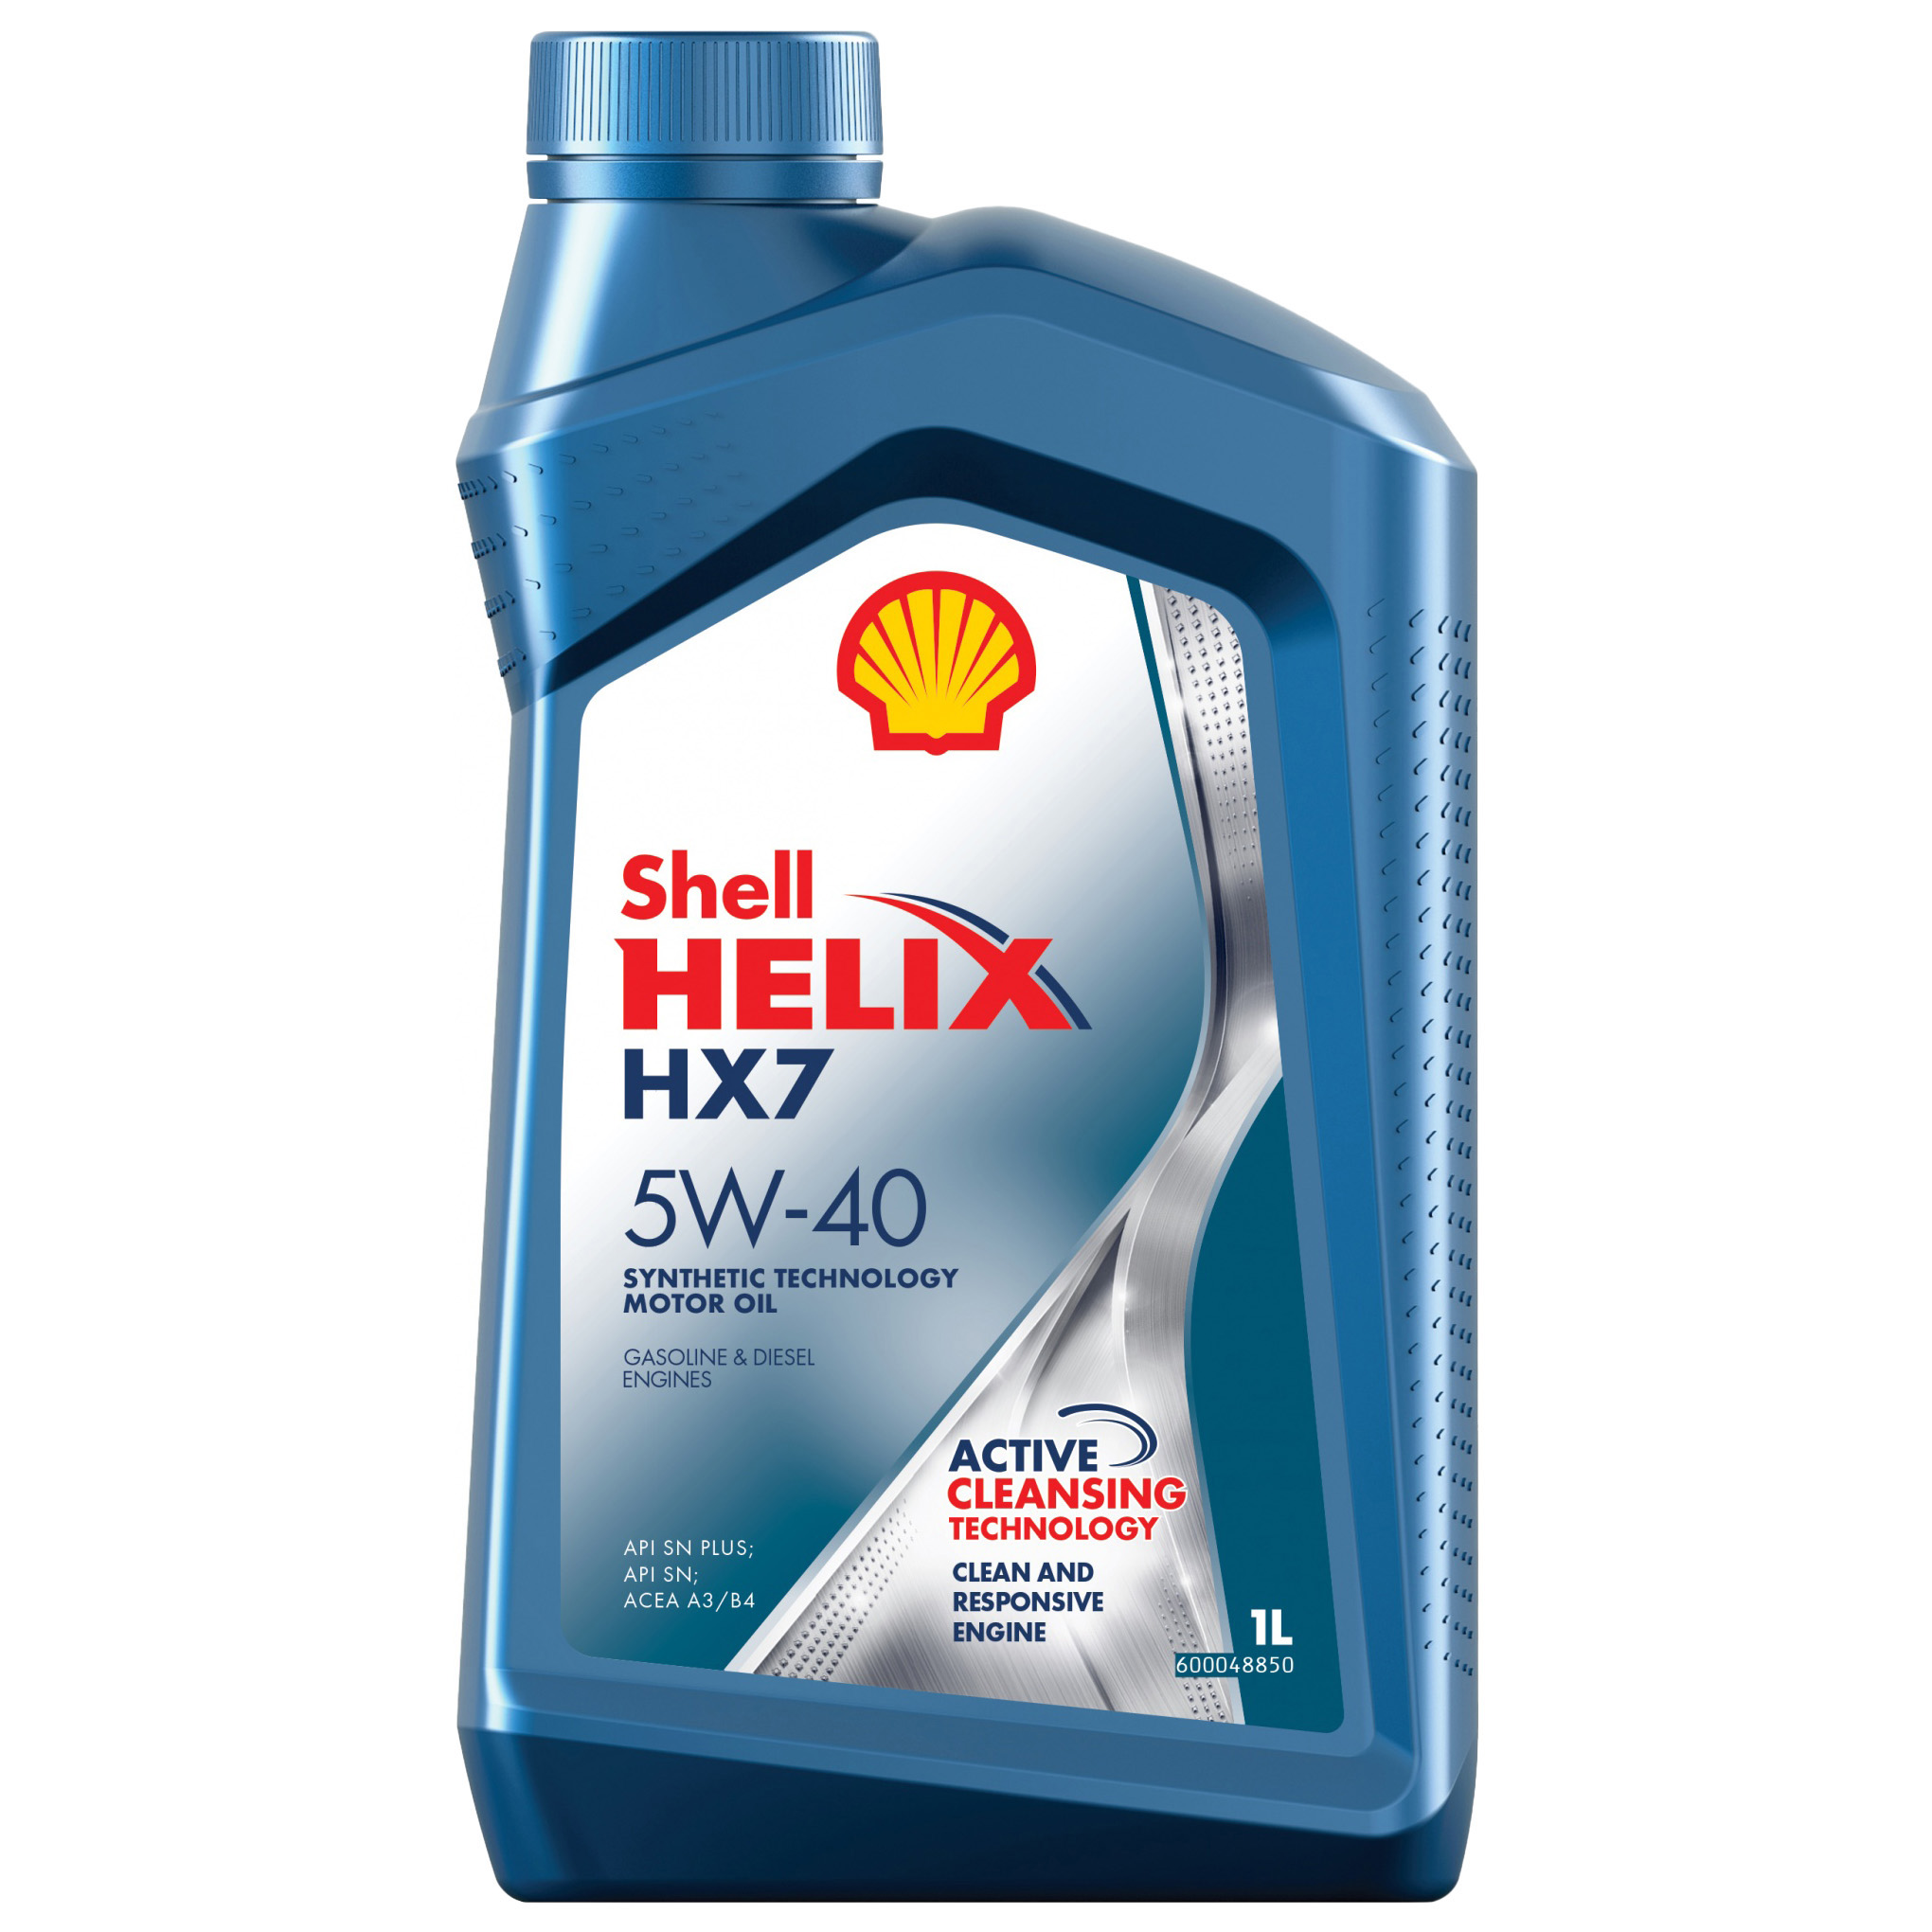 Масло Shell моторное 5W40 HX 7 A3/B3, A3/B4, SN/CF, SG+ 1л (полусинтетика)